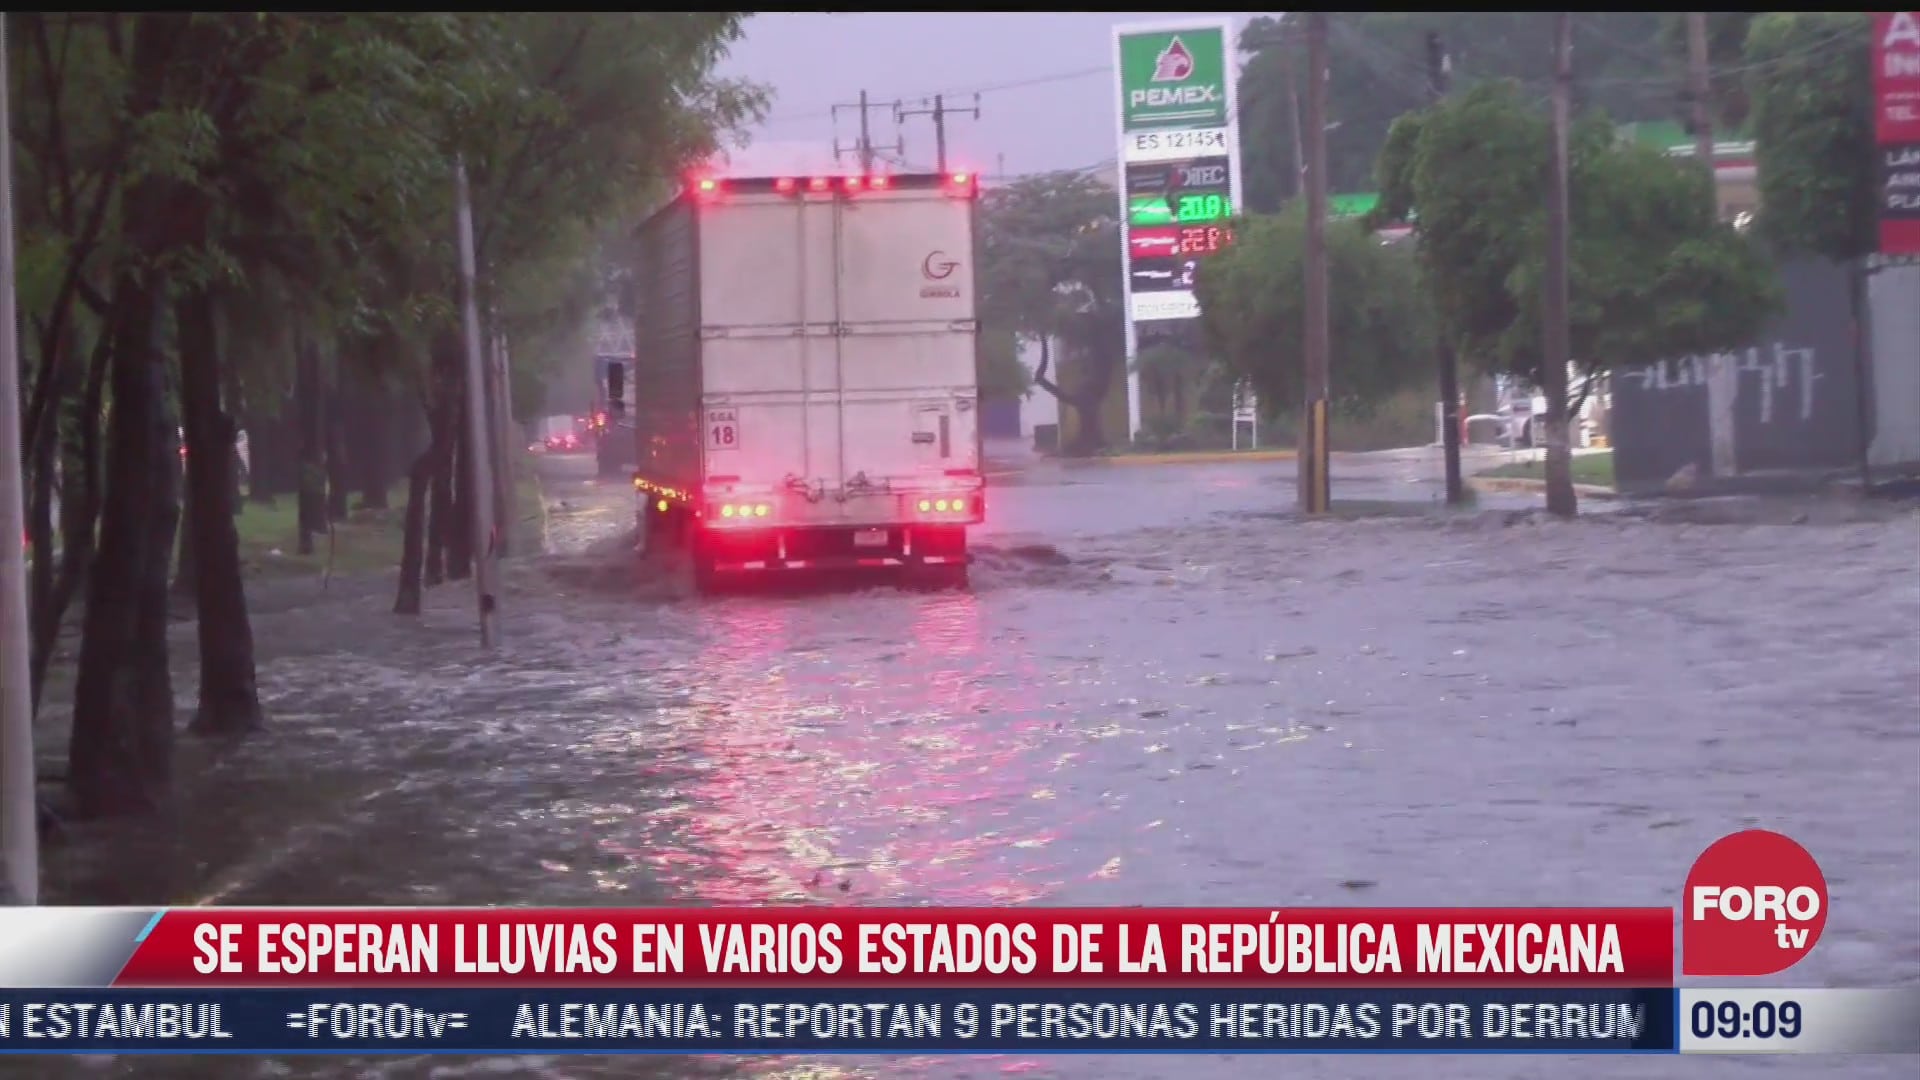 los danos y efectos provocados por el huracan enrique en mexico